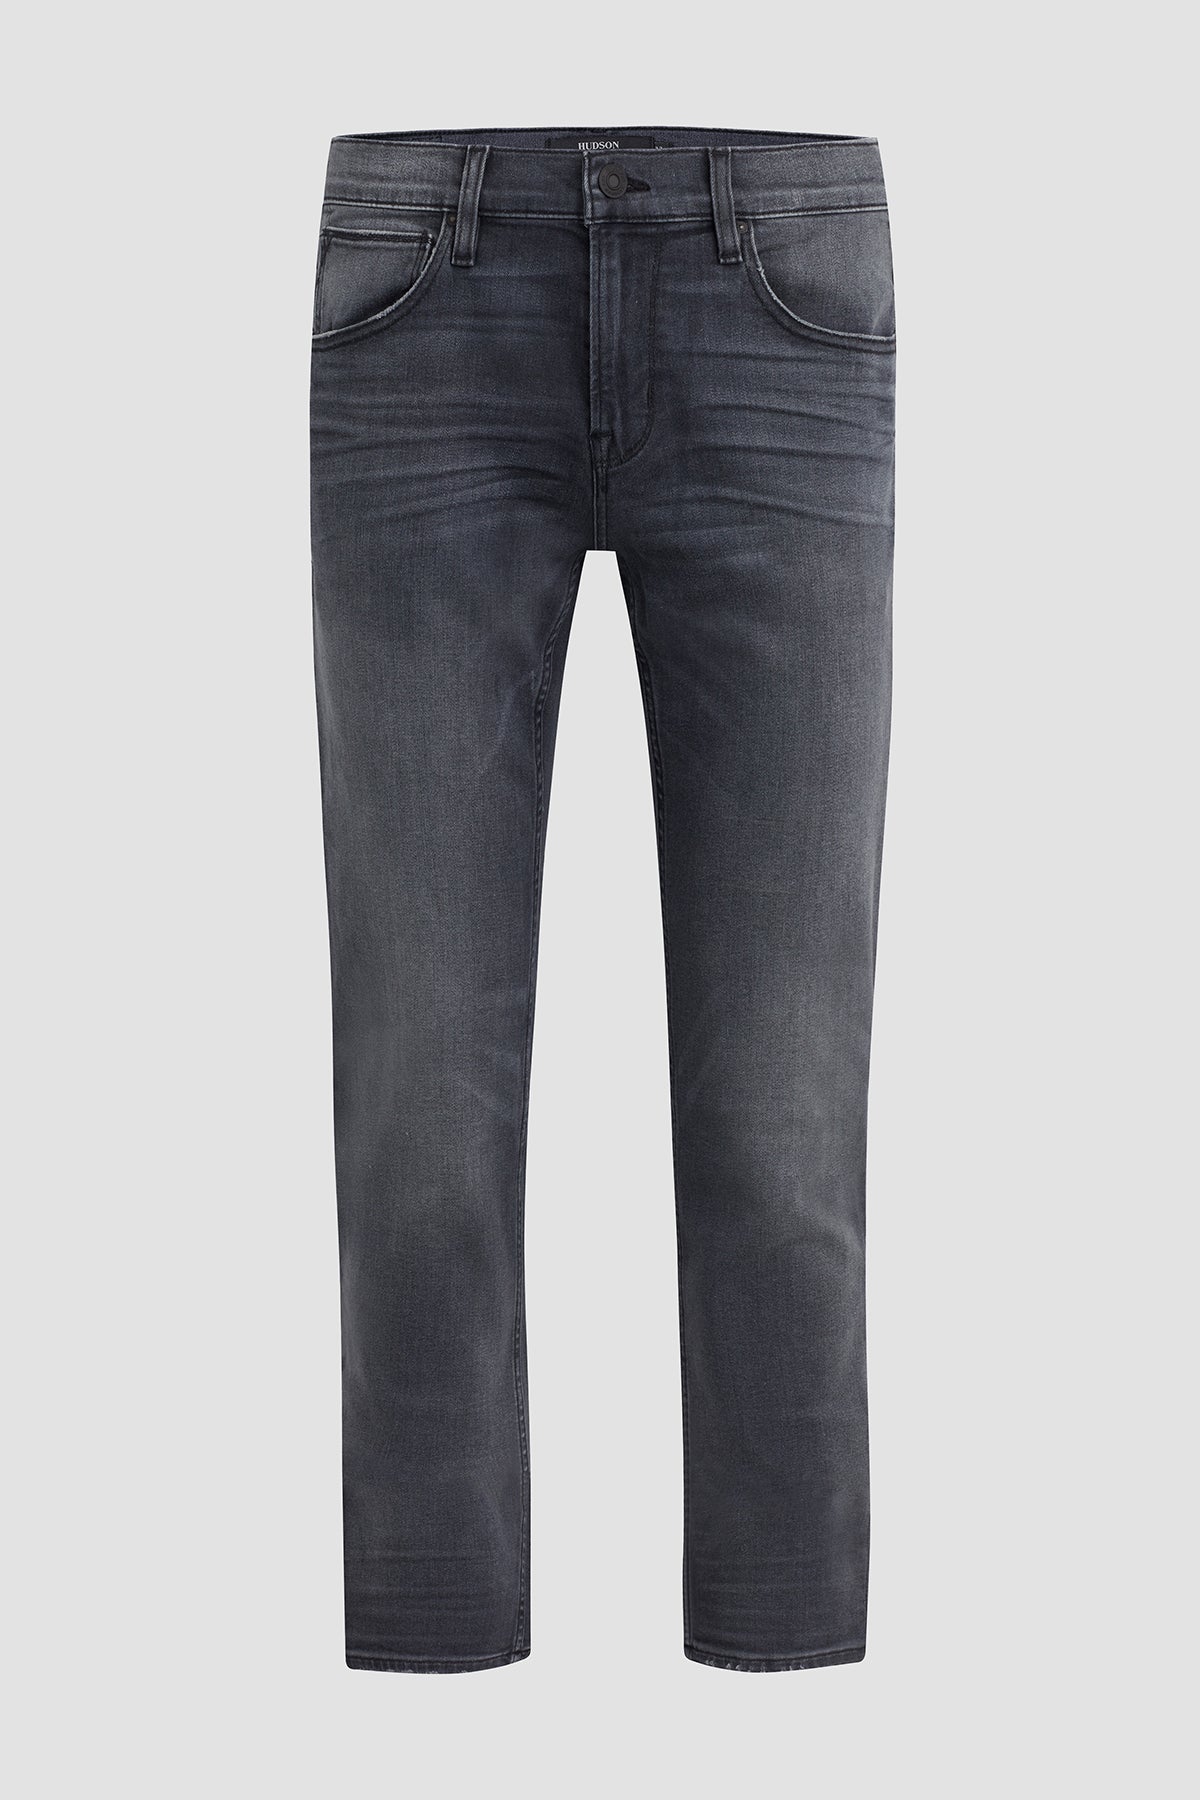 Haculla - chain-link Slim-Fit Jeans - Men - Cotton/Spandex/Elastane - 28 - Black